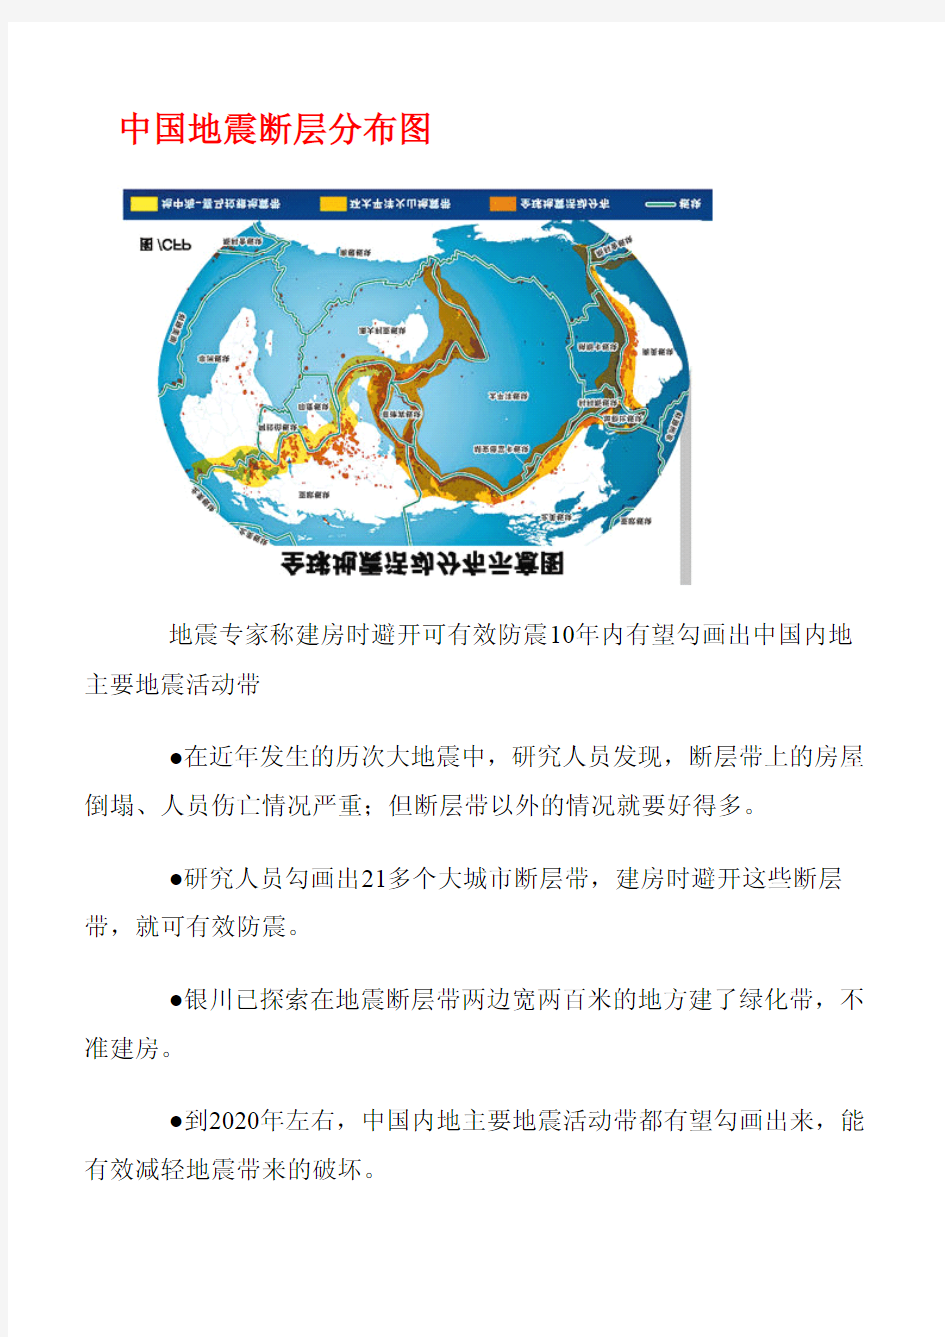 中国地震断层分布图(图)